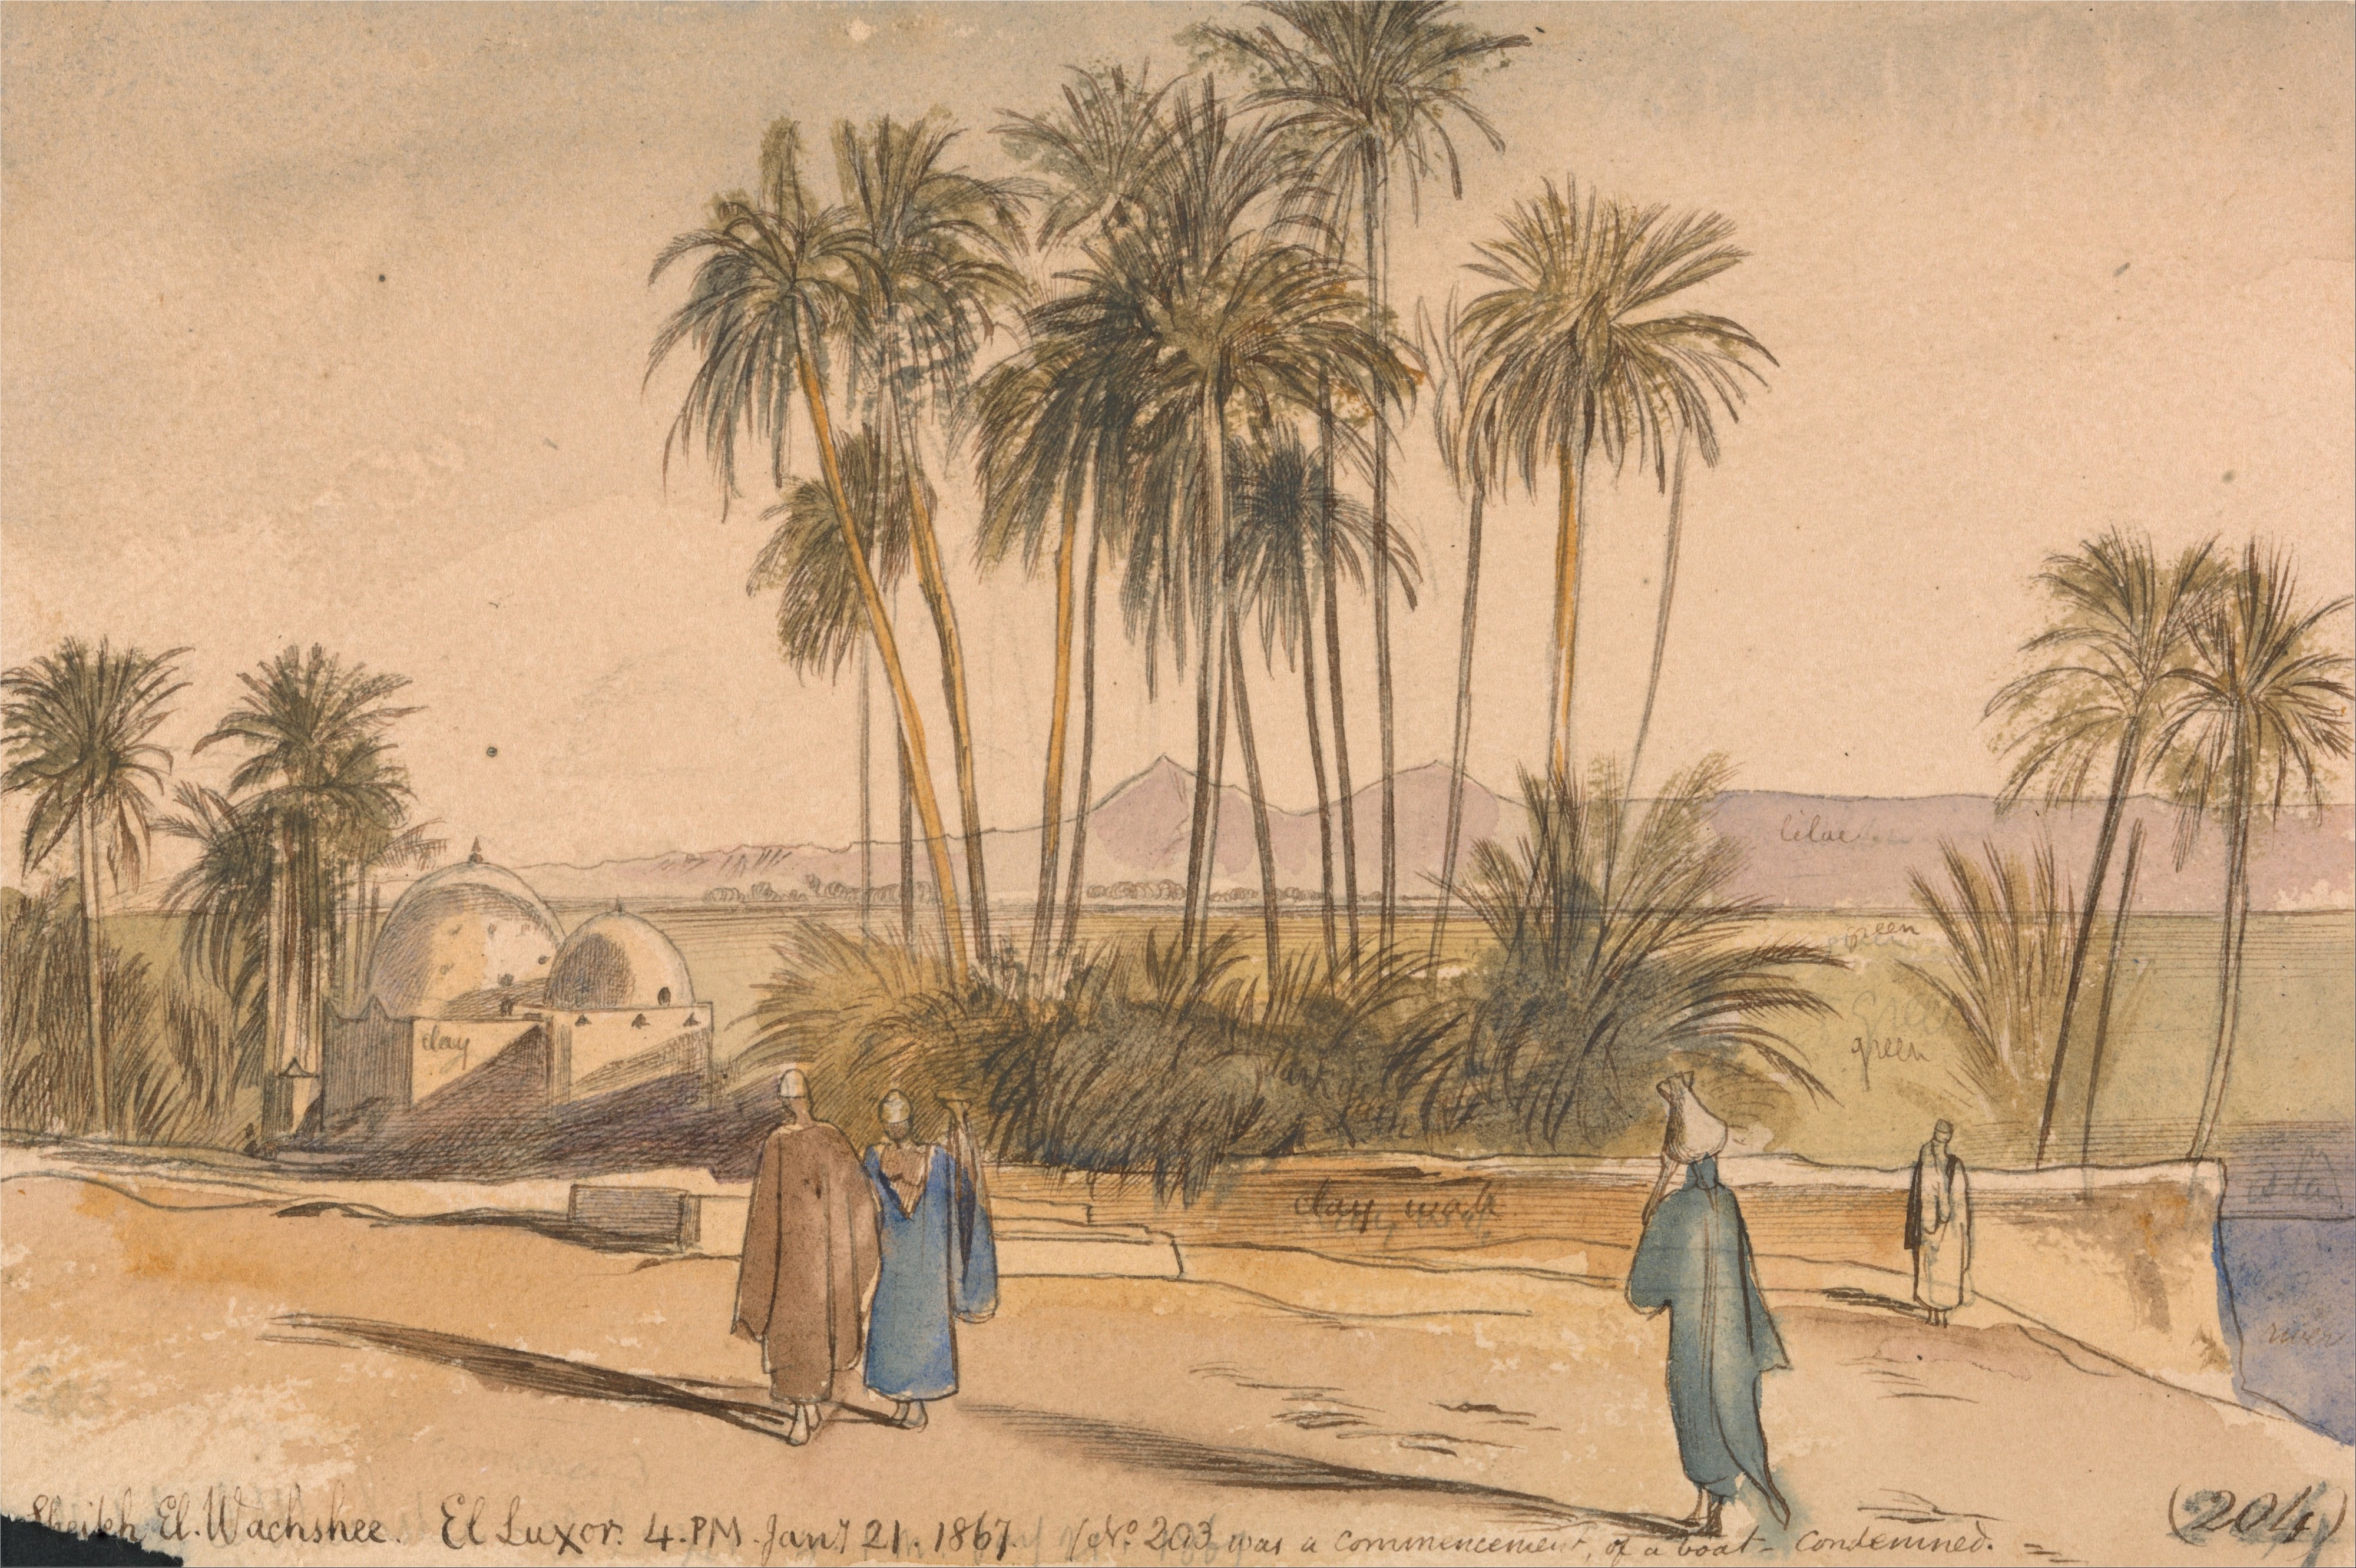 Edward Lear - Sheikh El Wachshee, El Luxor - Google Art Project